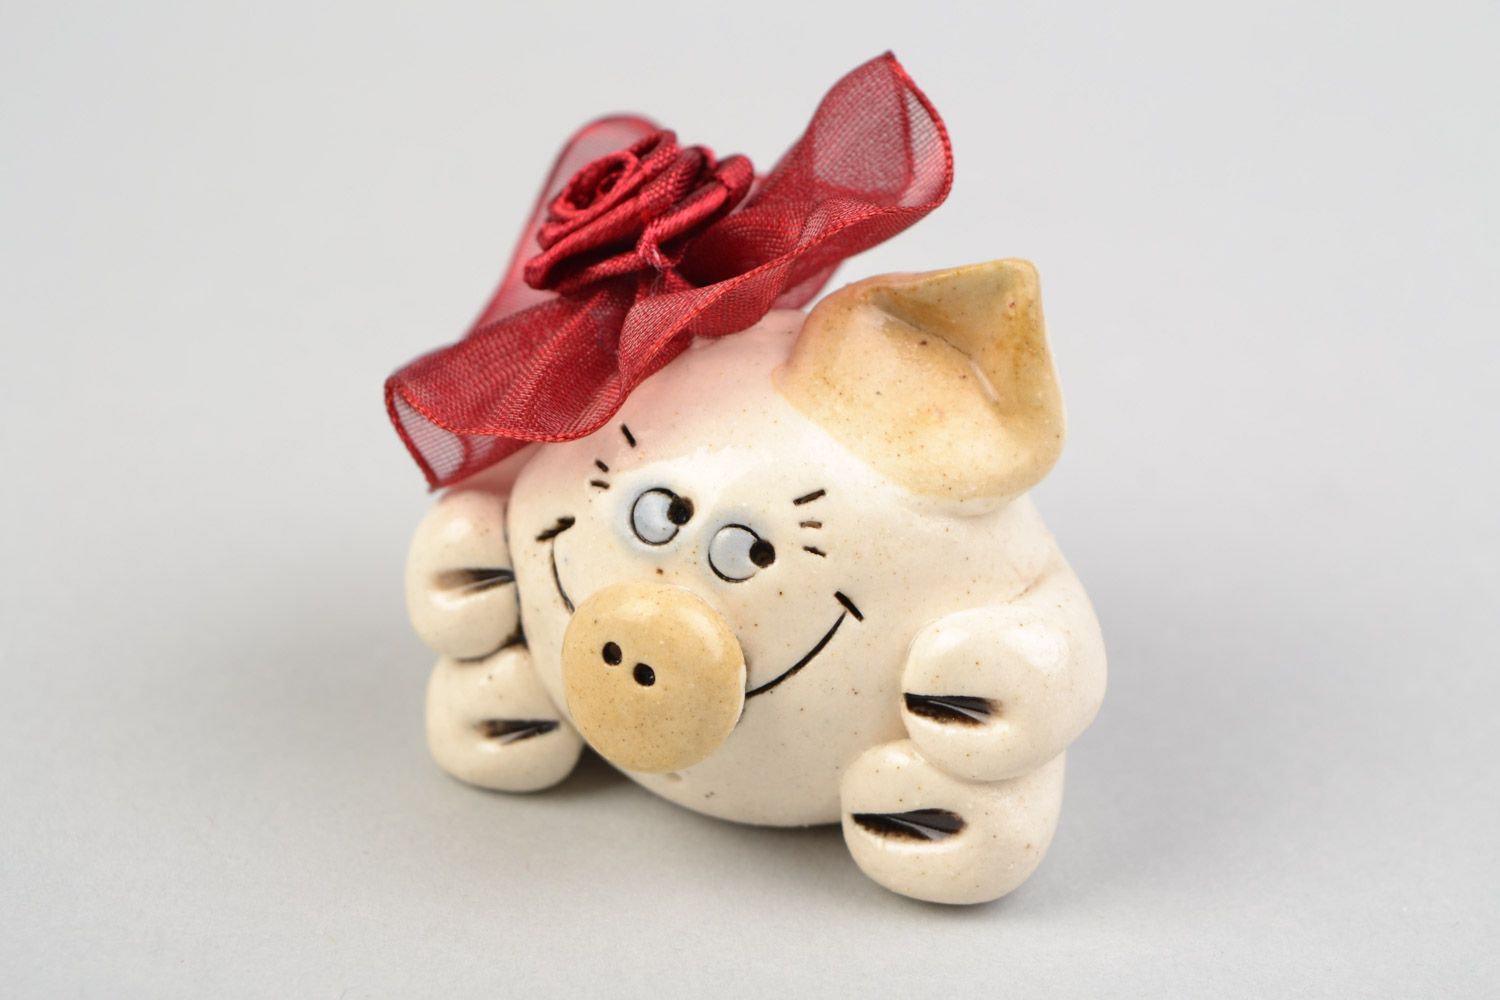 Фарфоровая фигурка свинка с бантом маленькая смешная улыбчивая декор хенд мэйд фото 1